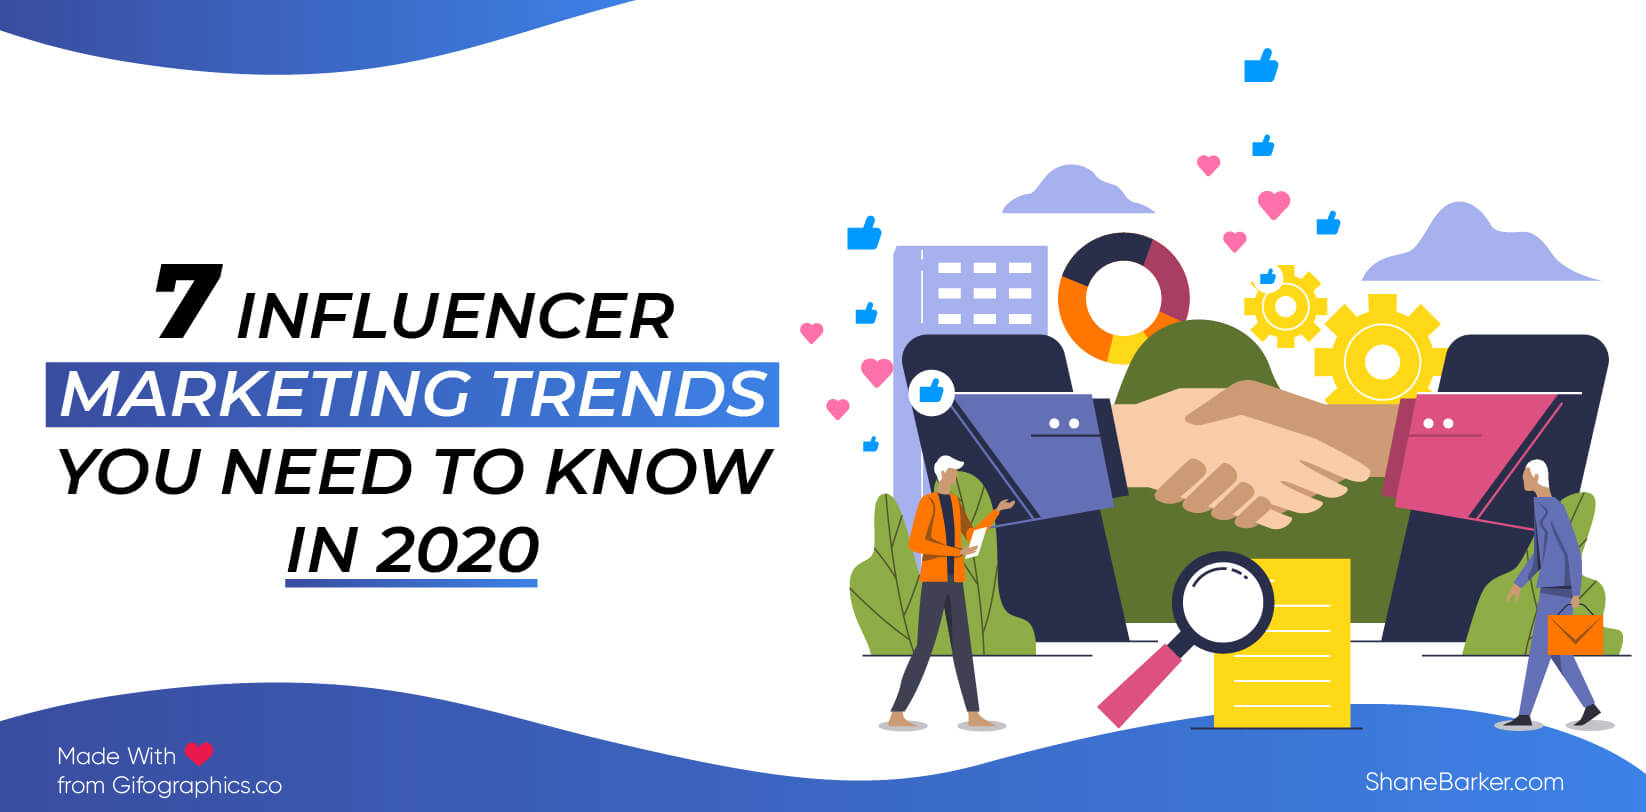 7 tendências de marketing influenciador que você precisa saber em 2020 (atualizado em outubro)